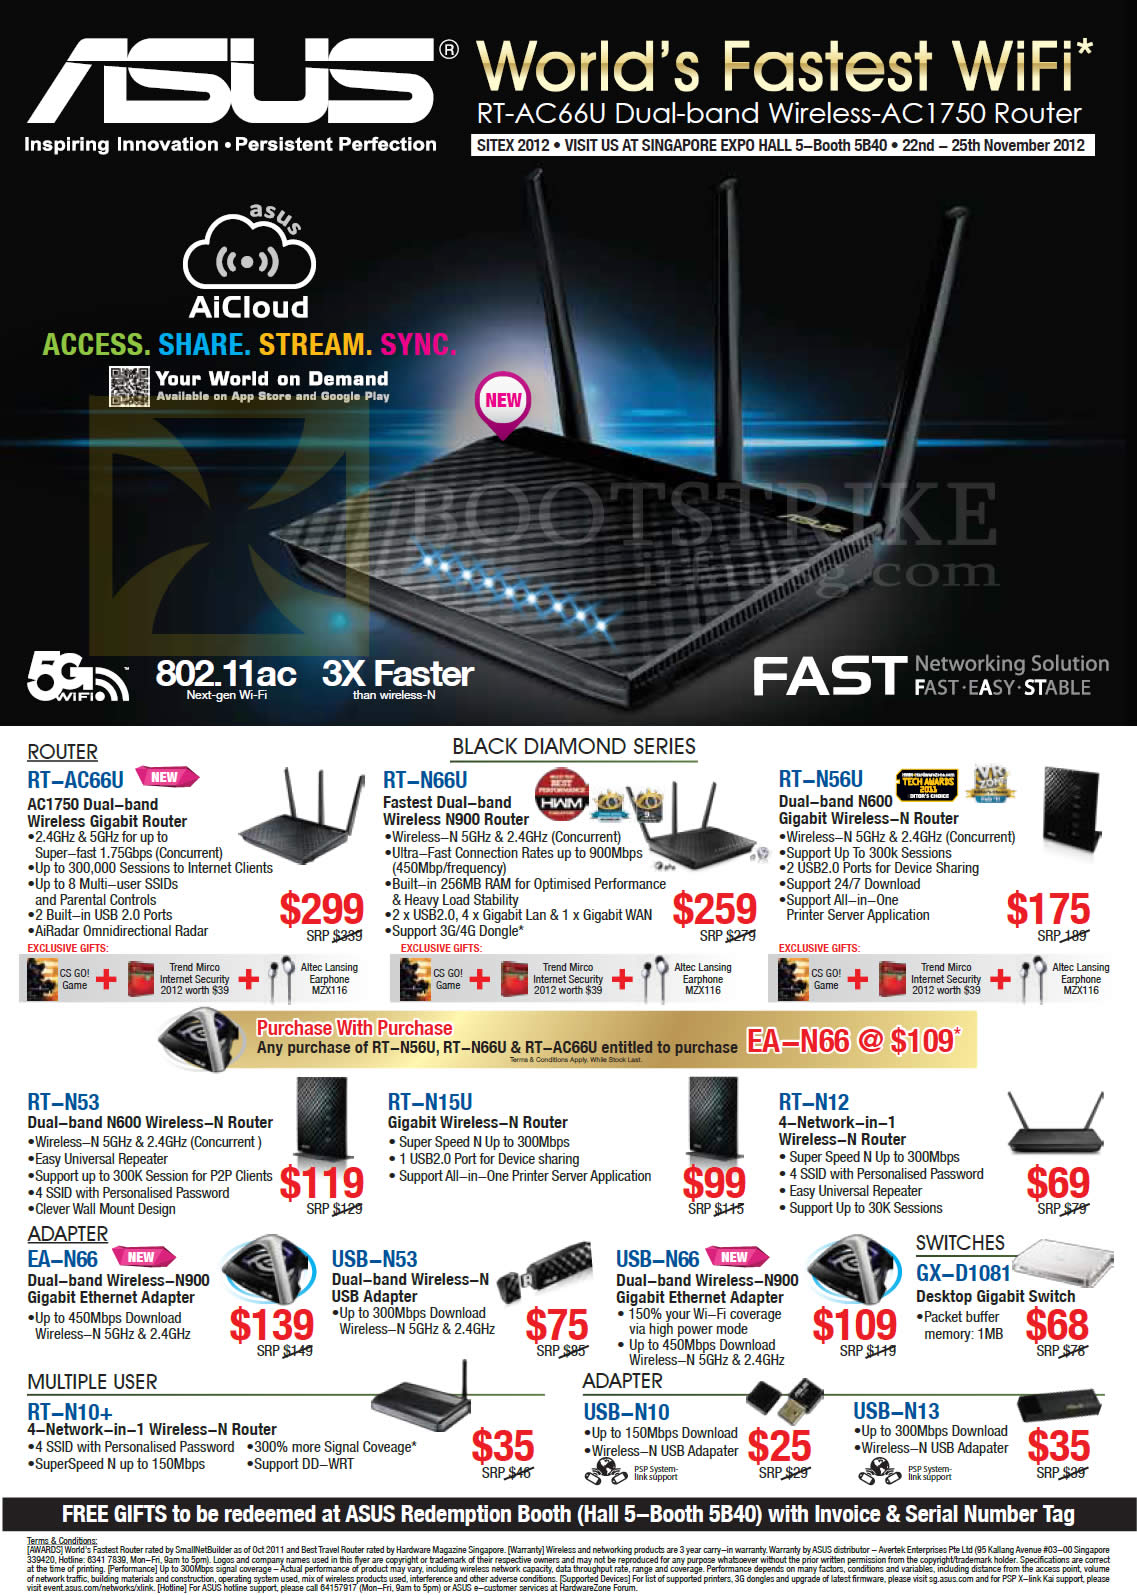 SITEX 2012 price list image brochure of ASUS Networking Wireless Router RT AC66U, N66U, N56U, N53, N15U, N12, N10, USB Adapter N10, N13